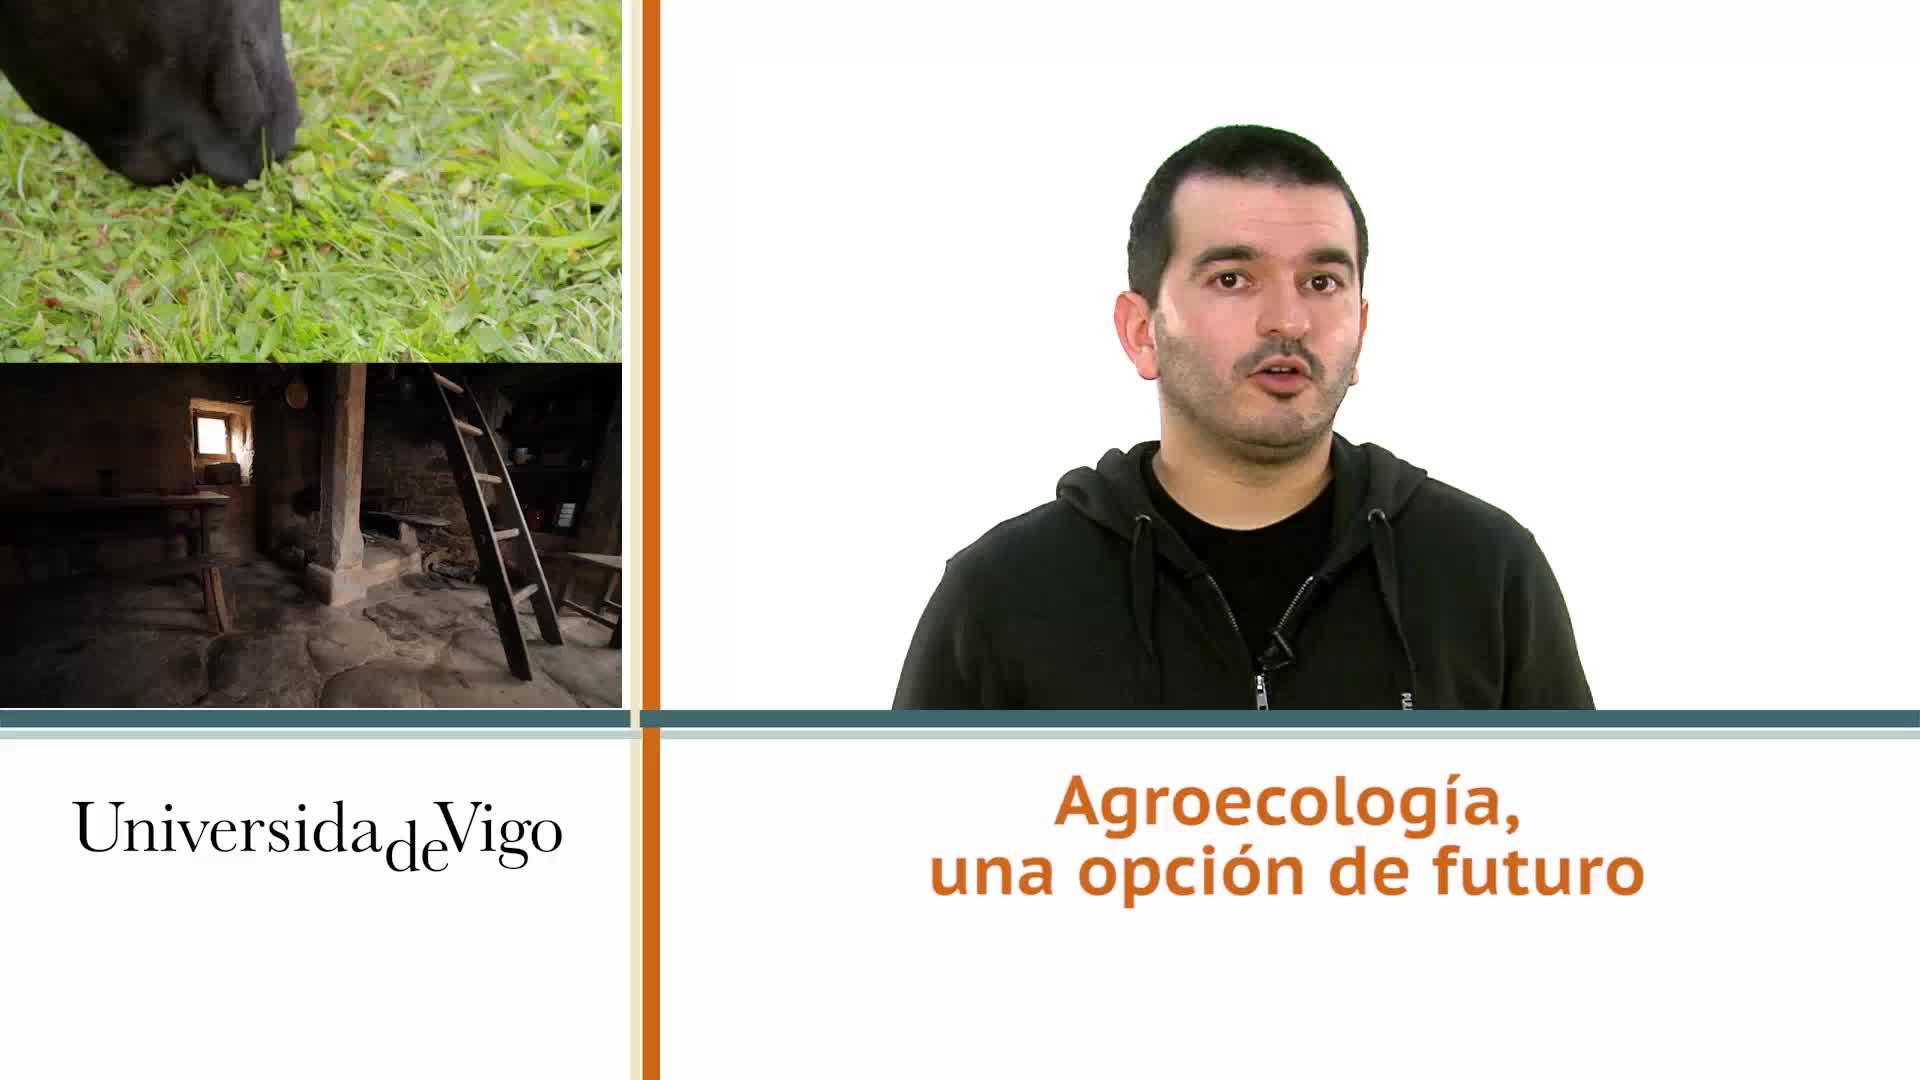 Agroecología, una opción de futuro